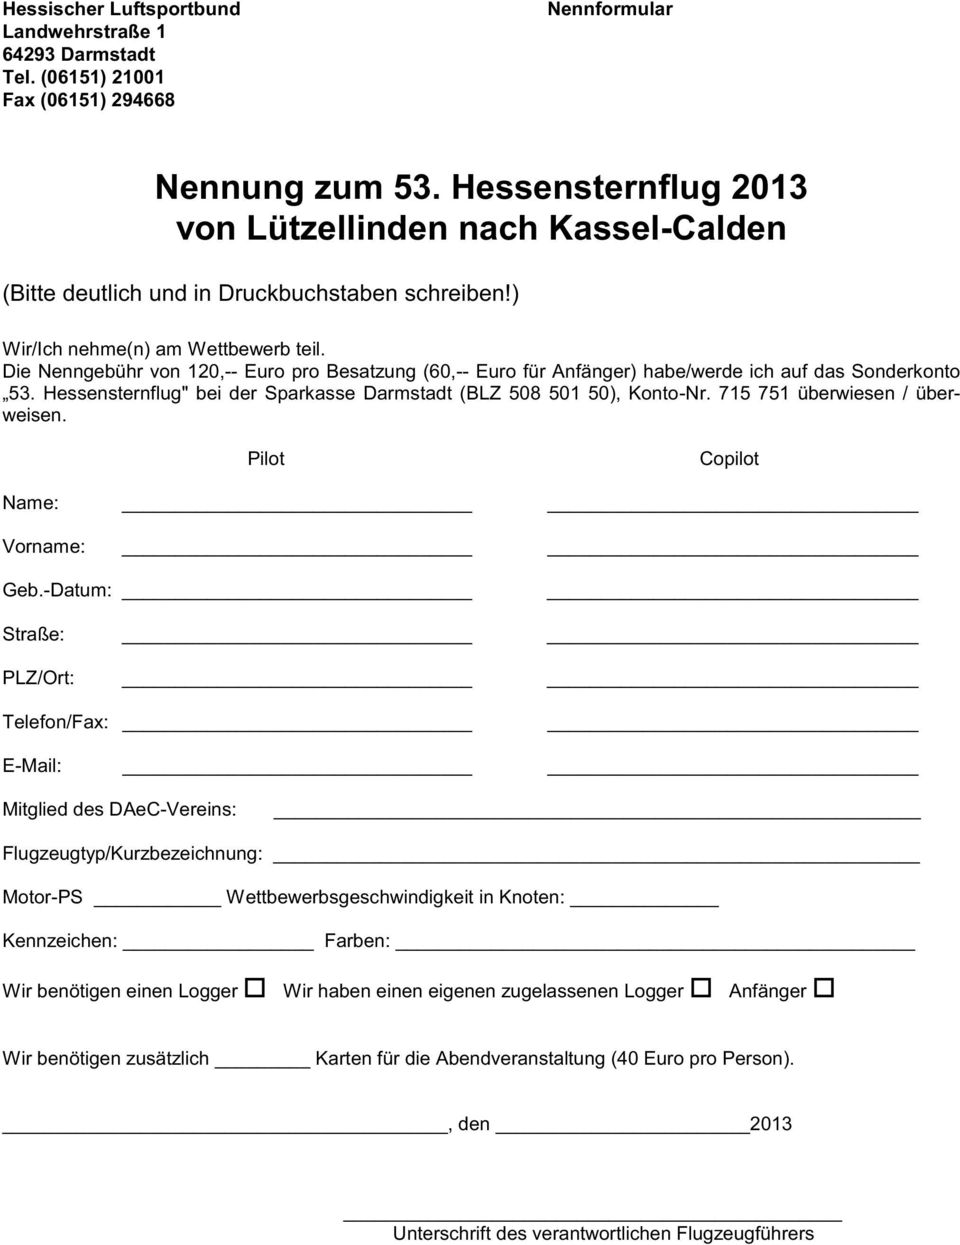 Die Nenngebühr von 120,-- Euro pro Besatzung (60,-- Euro für Anfänger) habe/werde ich auf das Sonderkonto 3. Hessensternflug" bei der Sparkasse Darmstadt (BLZ 508 501 50), Konto-Nr.